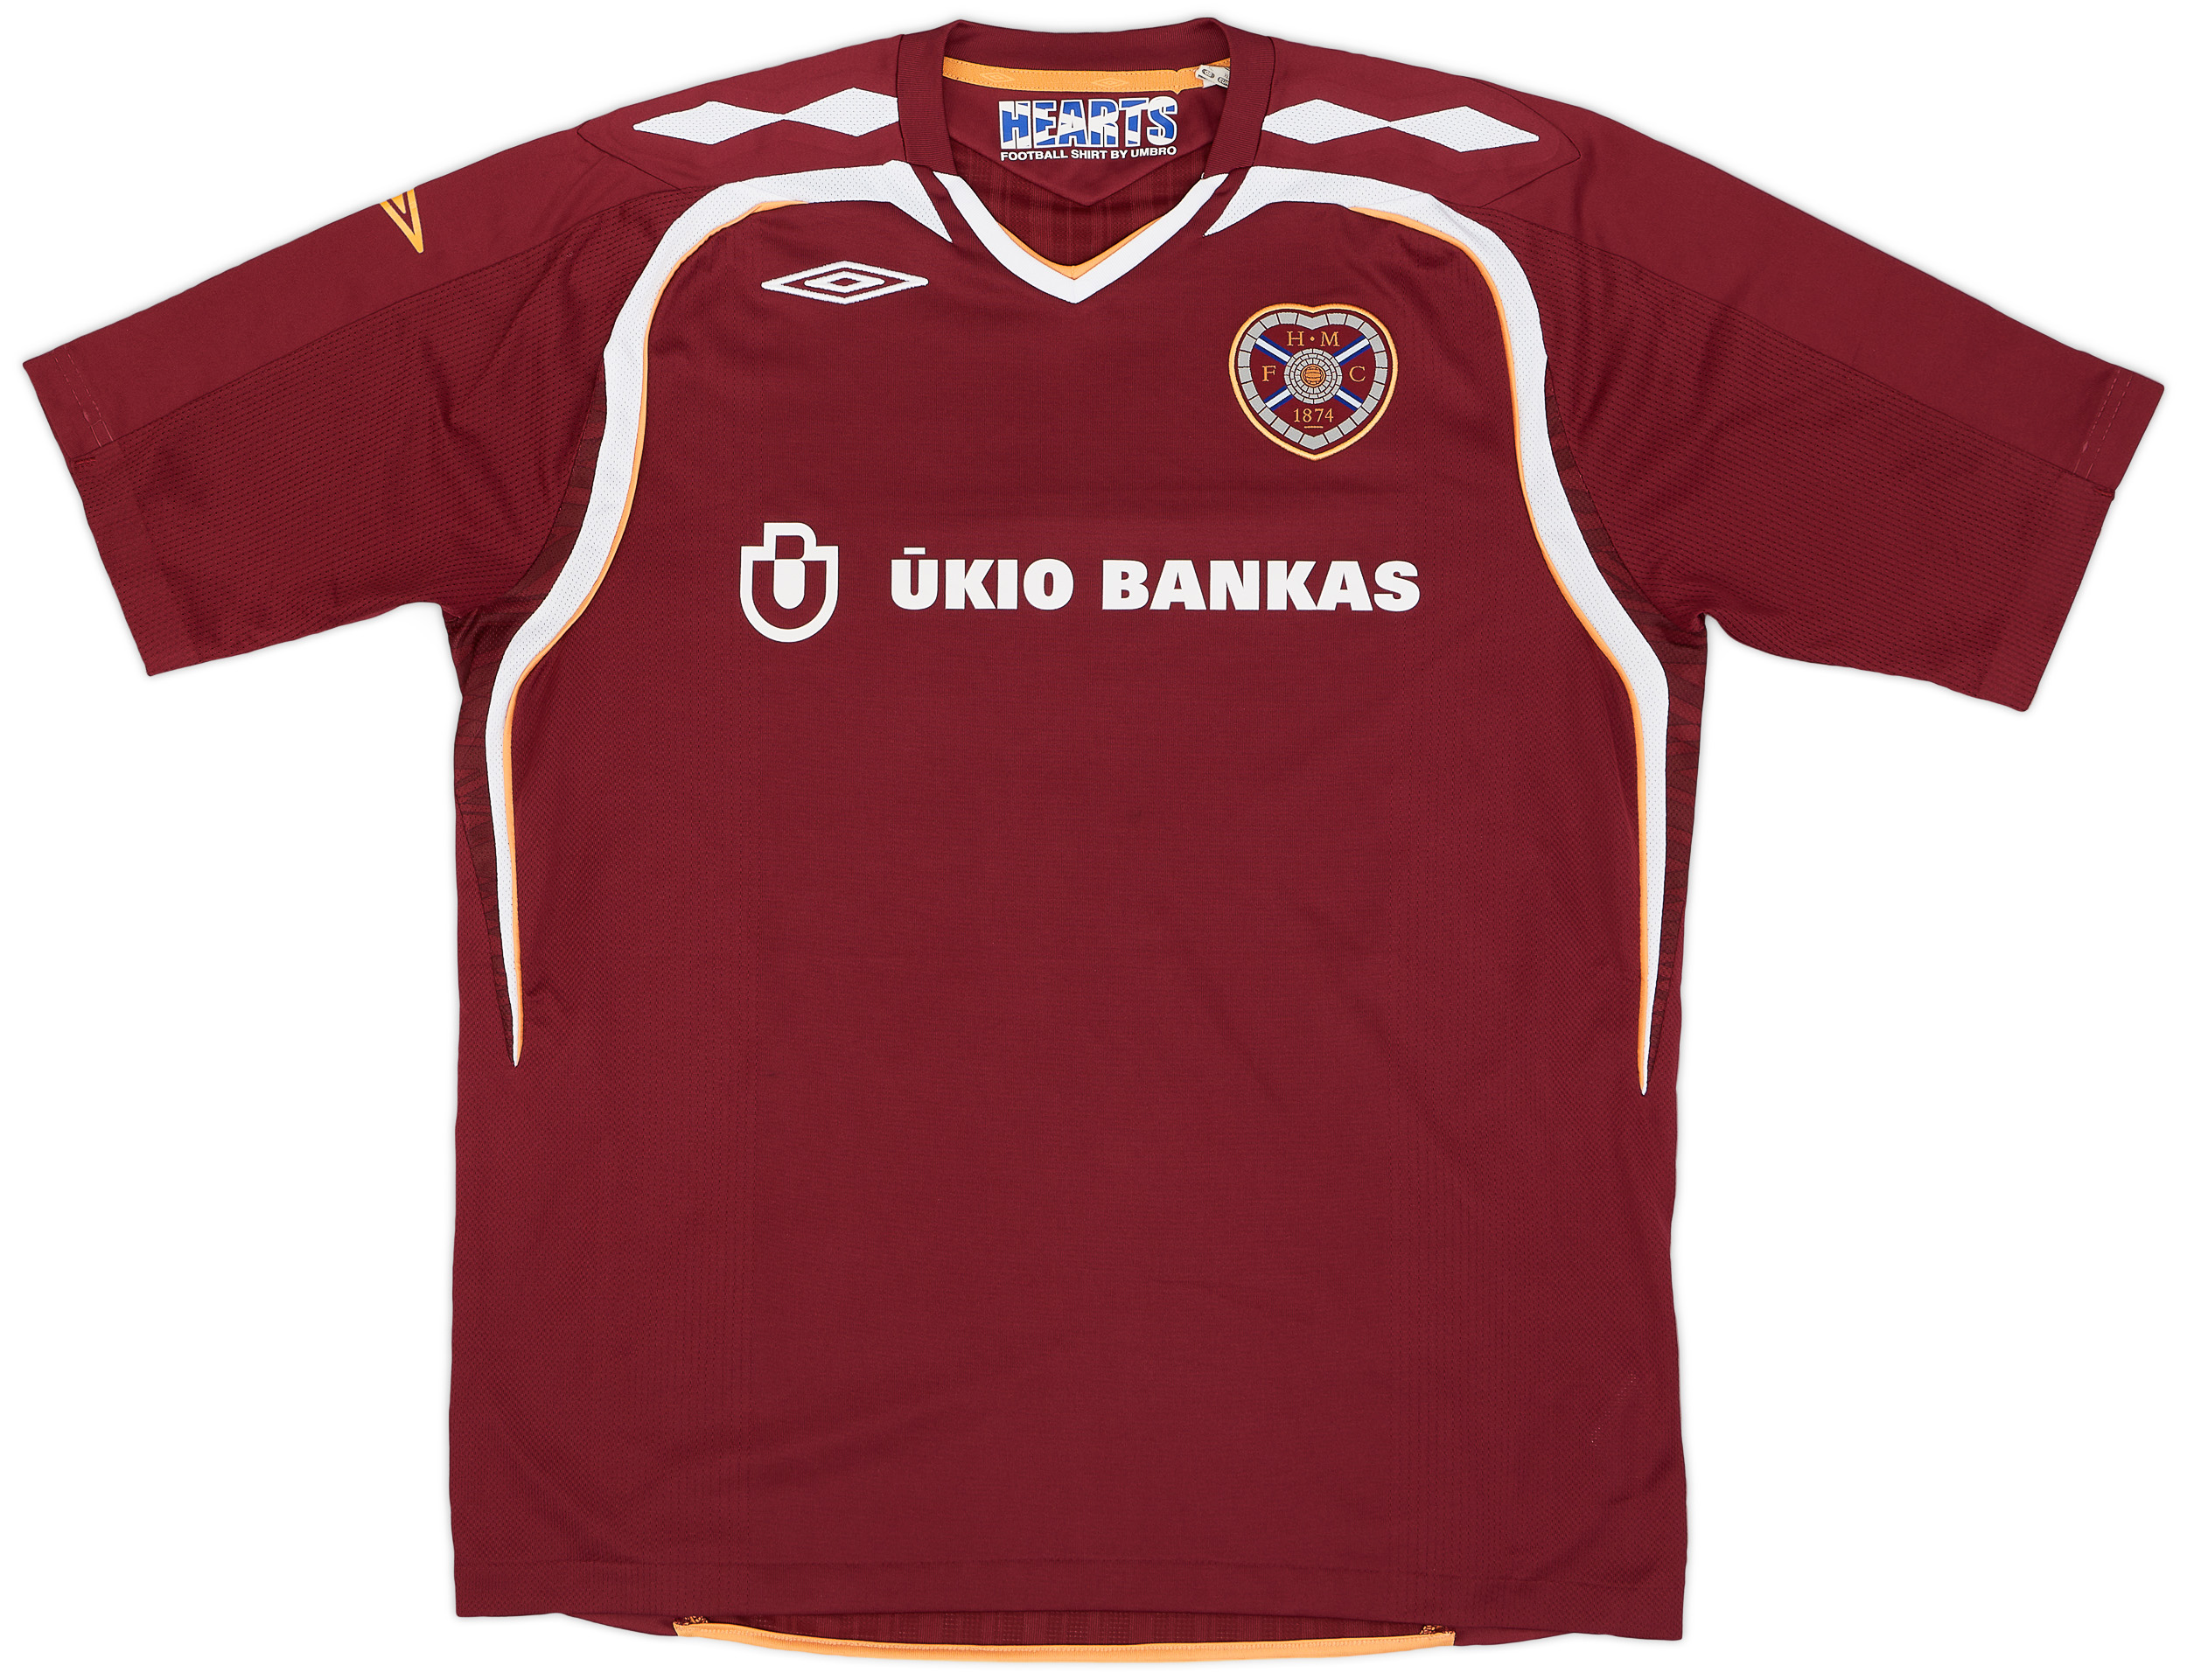 2007-08 Heart Of Midlothian (Hearts) Home Shirt - 7/10 - ()